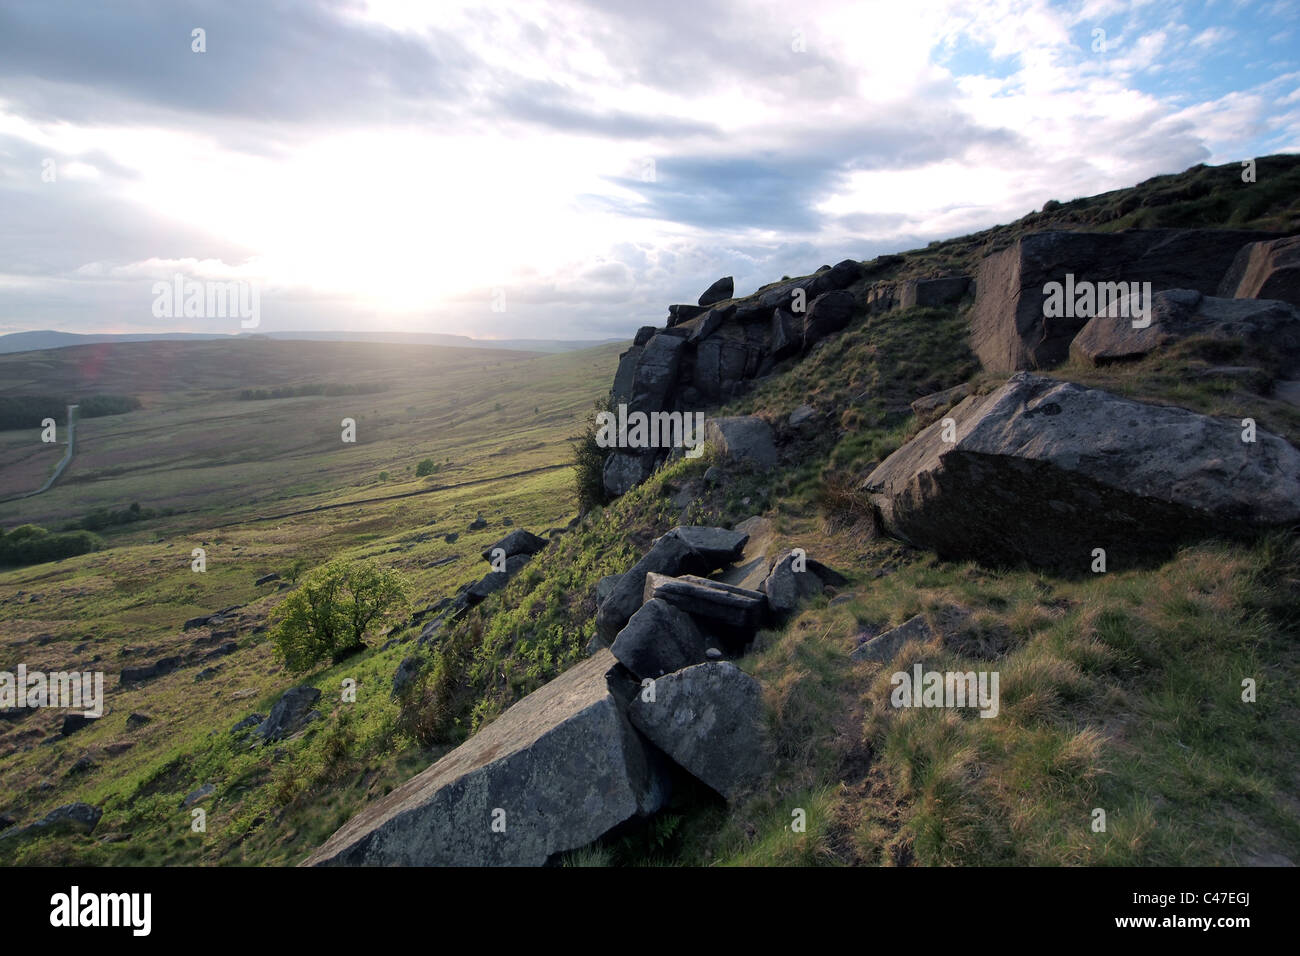 Bordo Stanage rocky gritstone affioramento del Peak District, Derbyshire, in Inghilterra, in Gran Bretagna Foto Stock